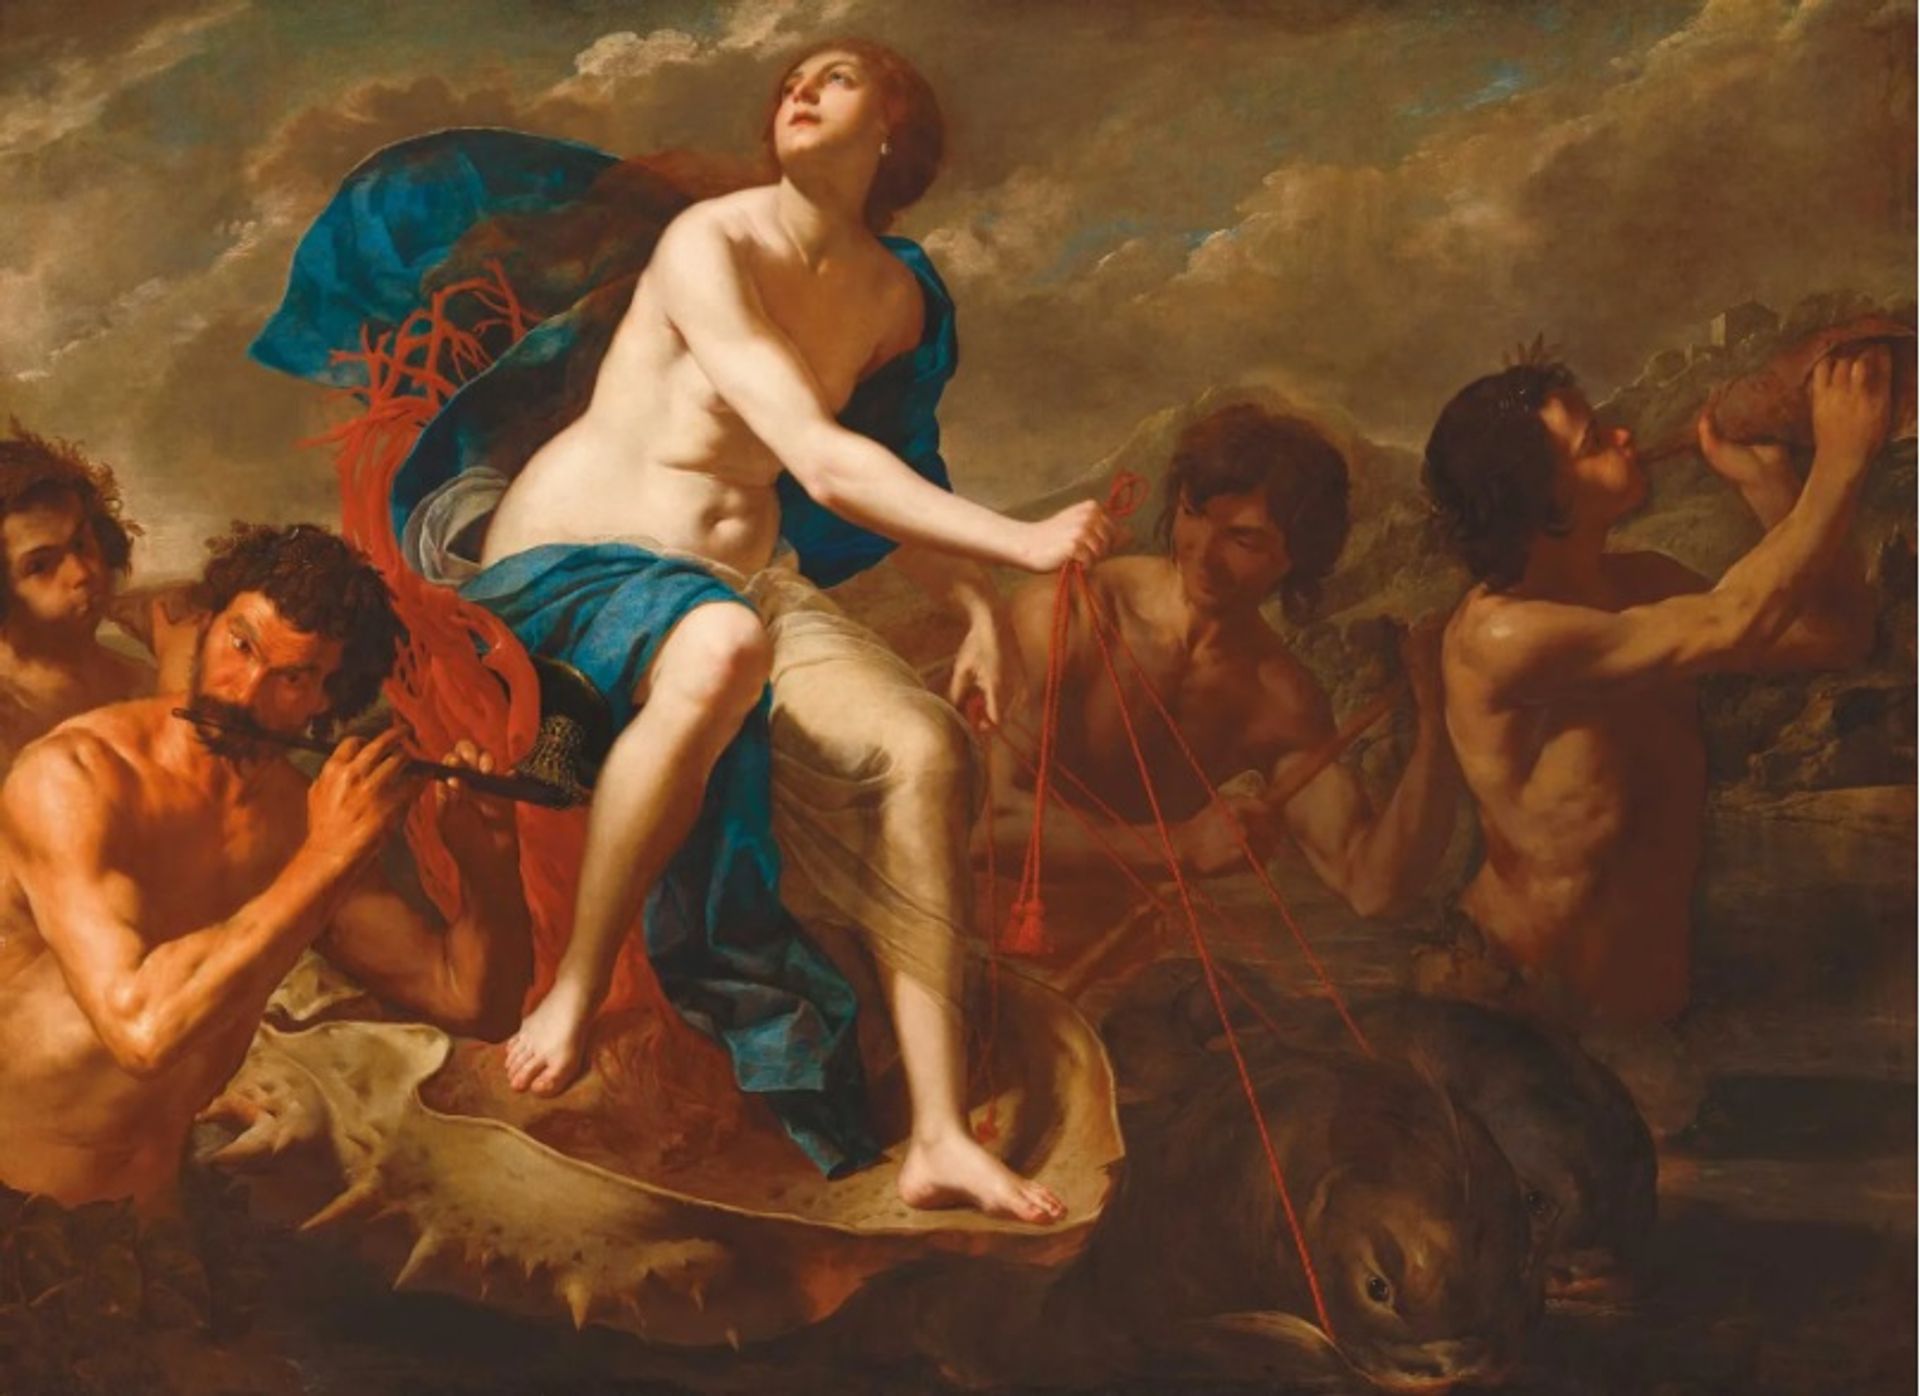 Triumph of Galatea (בסביבות 1650) נוצר על ידי ארטמיסיה יחד עם ברנרדו קוואלינו, אך אוצרי תערוכה חדשה מייחסים אותו לארטמיסיה מכיוון שהיא הייתה "הבעלים והיוצרת" של העבודה 

הגלריה הלאומית לאמנות, וושינגטון הבירה